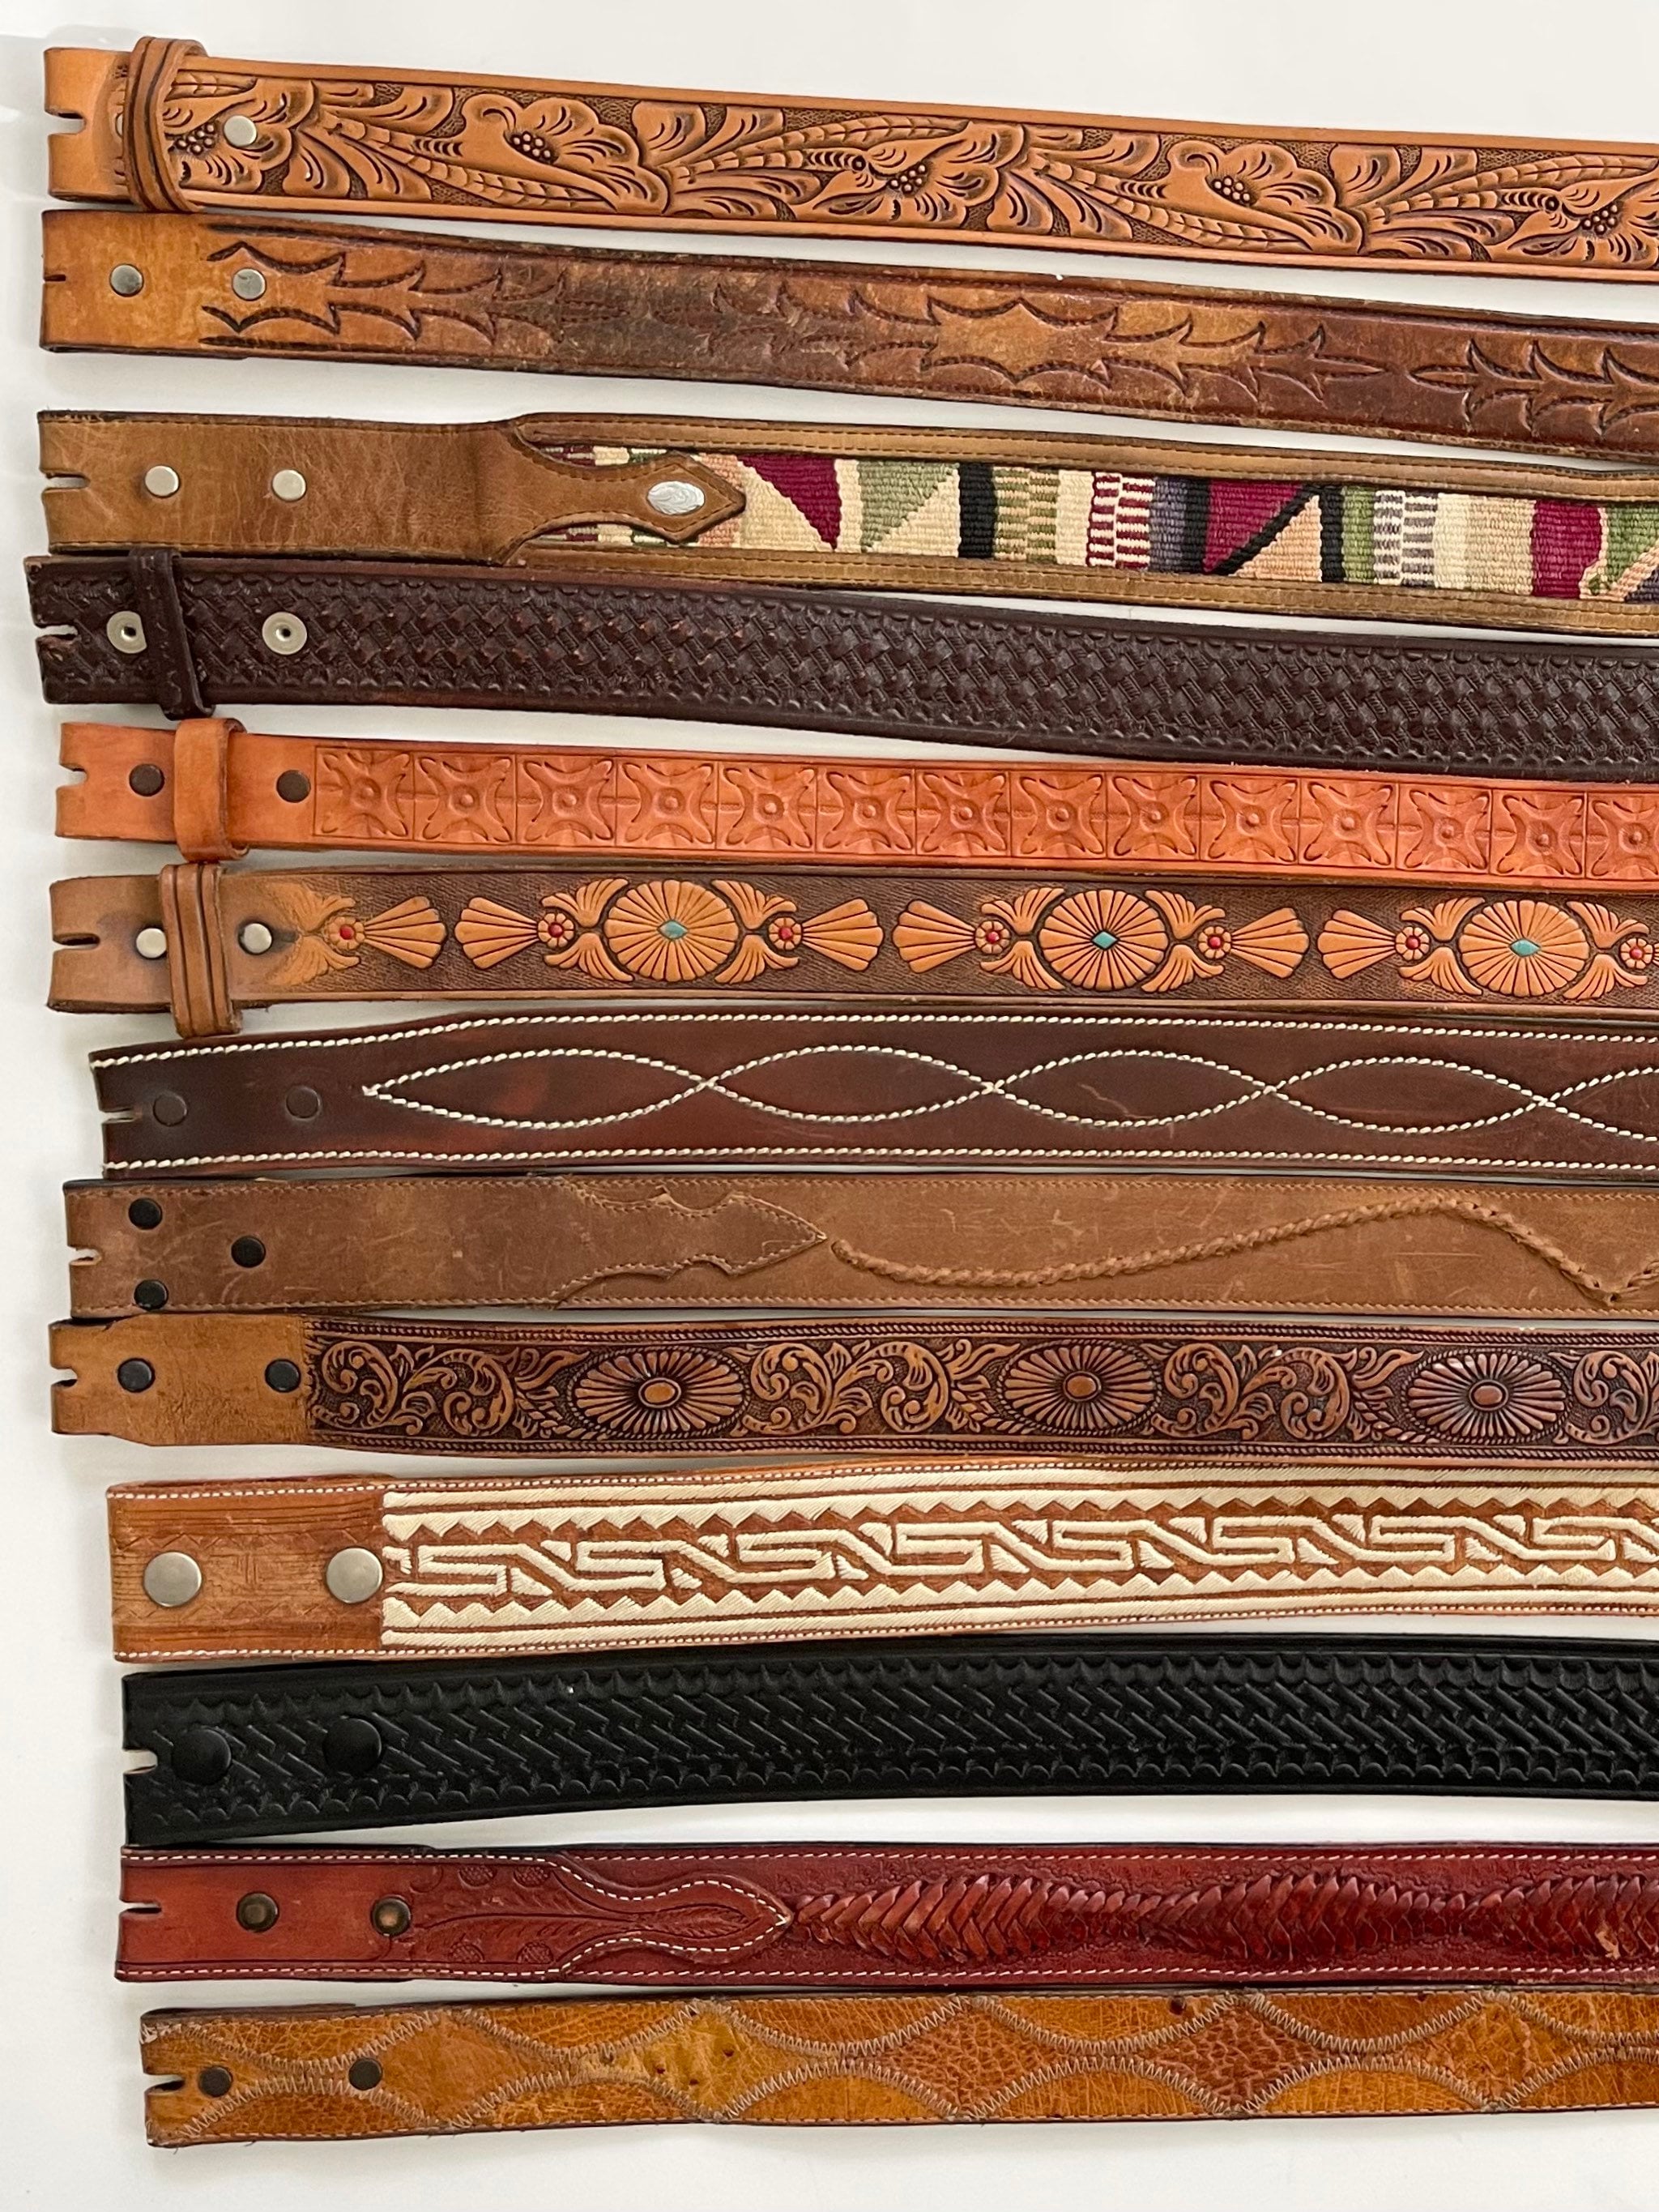 Western Leather Belt Strap Tooled Leather Stitched Details Vintage Snap ...